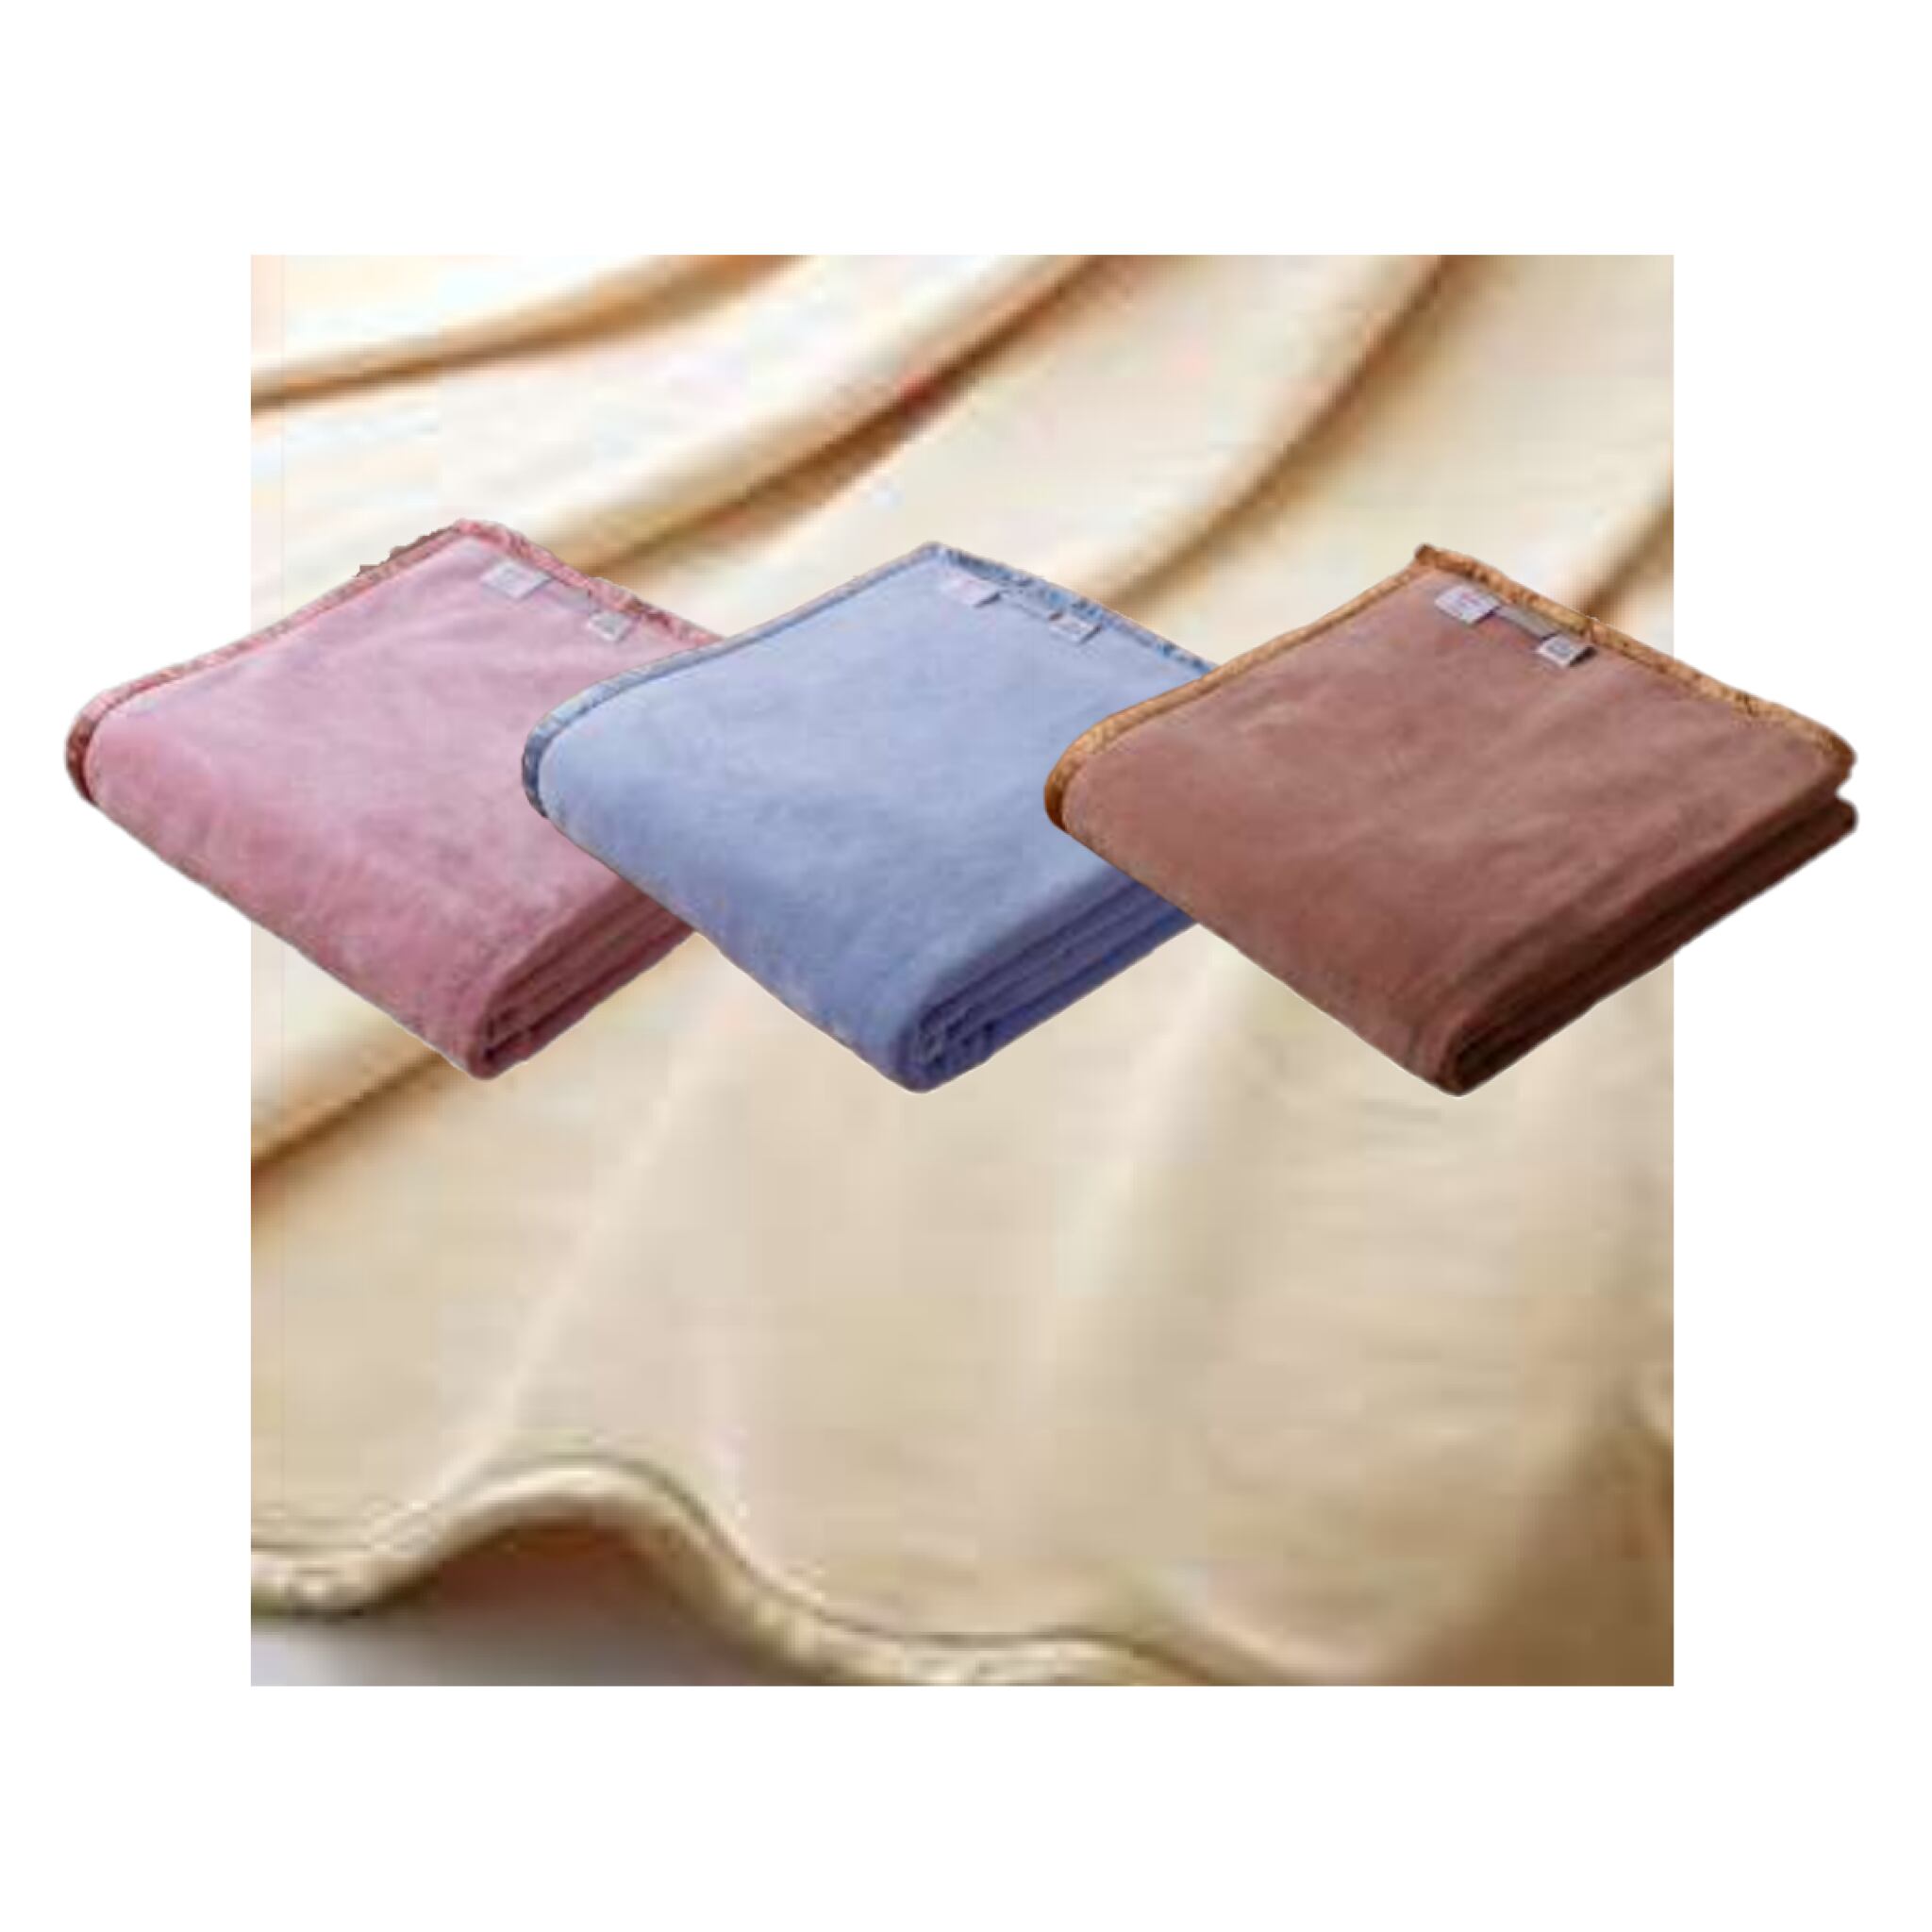 マイクロマティーク®  毛布 シングル 140×210cm アレルギー ほこり 対策 洗える 軽い 軽量 保温 速乾 清潔 耐久性 優しい肌触り Micromattique ダクロン毛布 マイヤー織